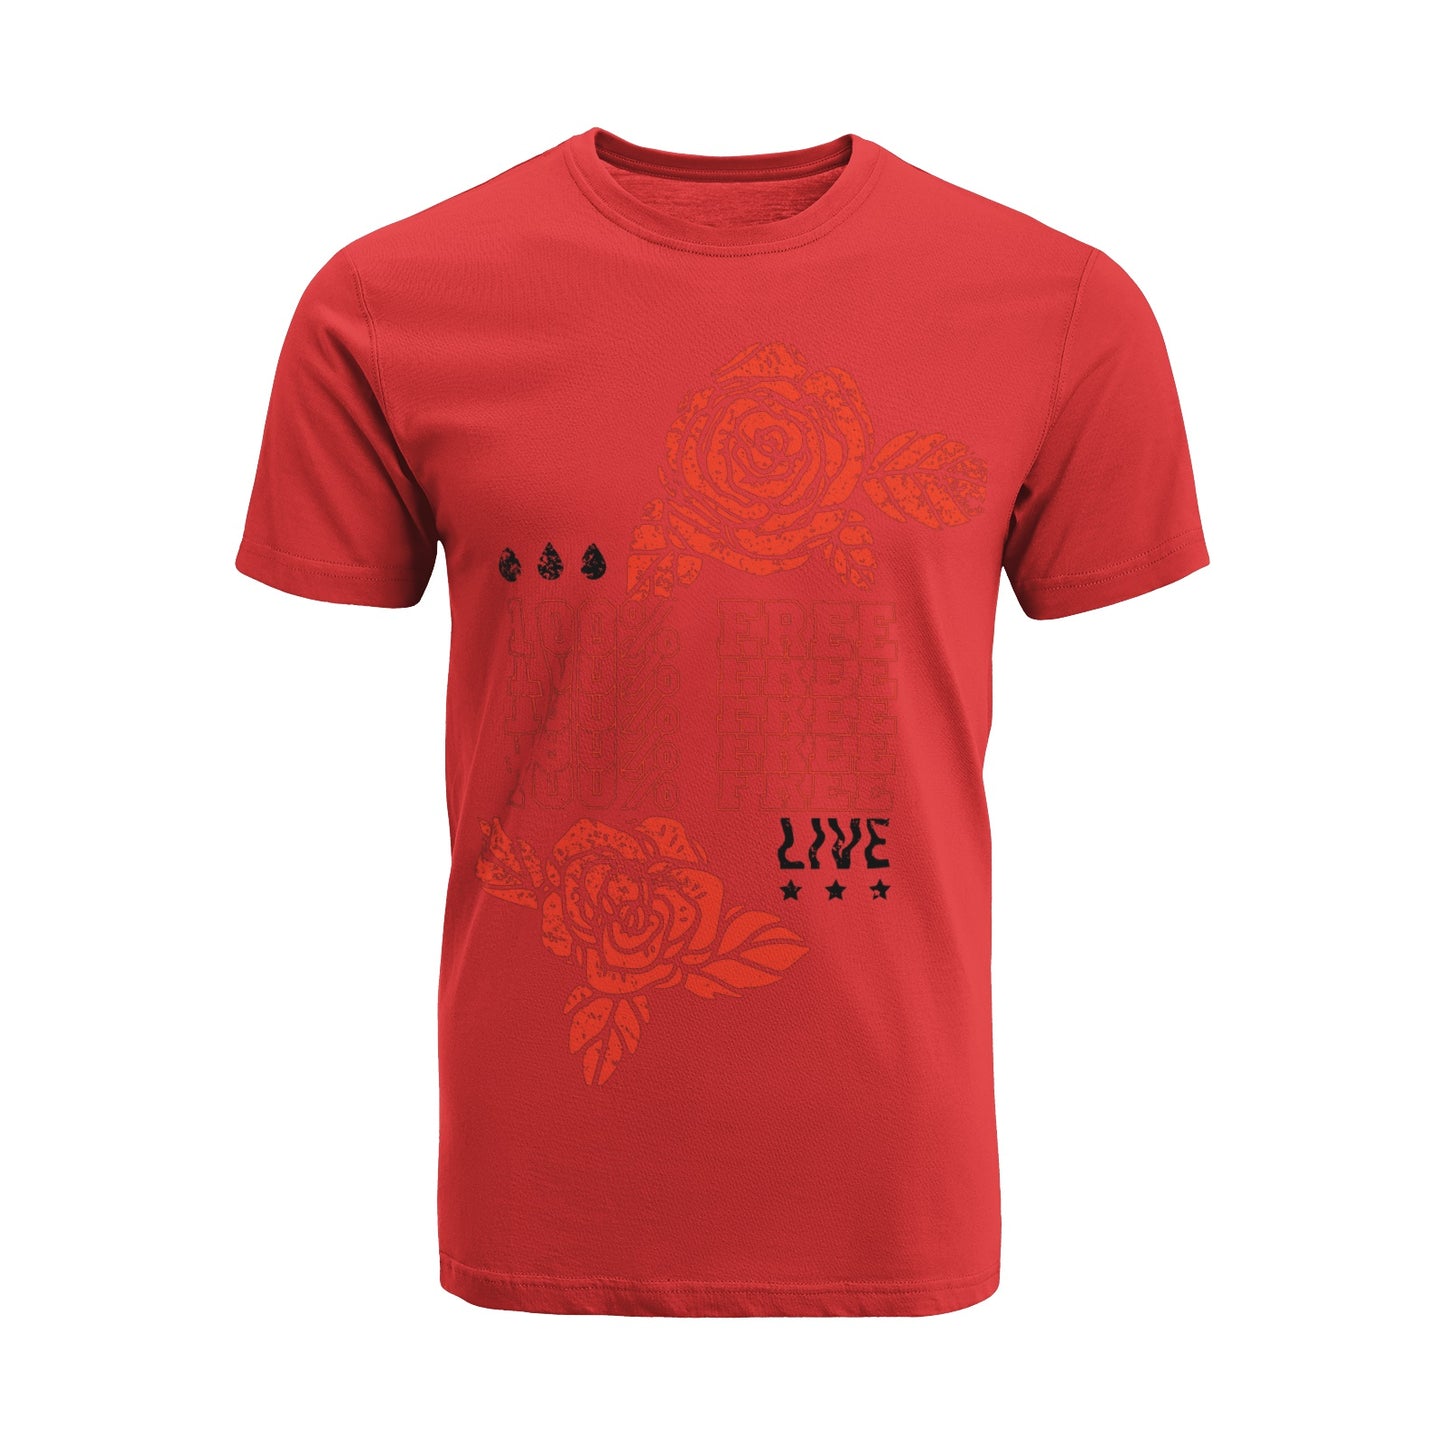 Free Live T-Shirt DromedarShop.com Online Boutique